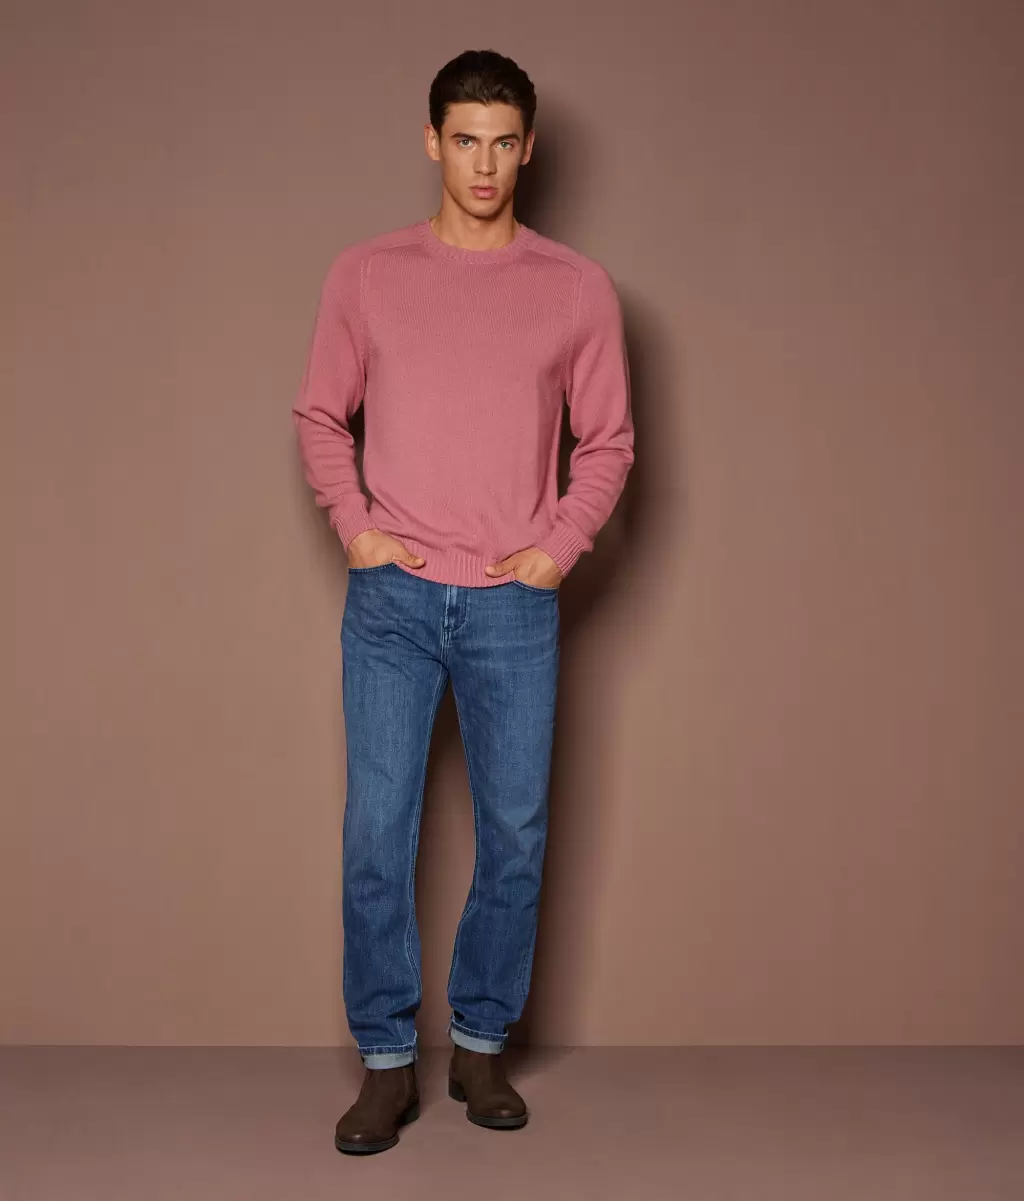 Swetry Z Okrągłym Dekoltem Pale_Pink Pulower Z Kaszmiru Ultrasoft Falconeri Mężczyzna